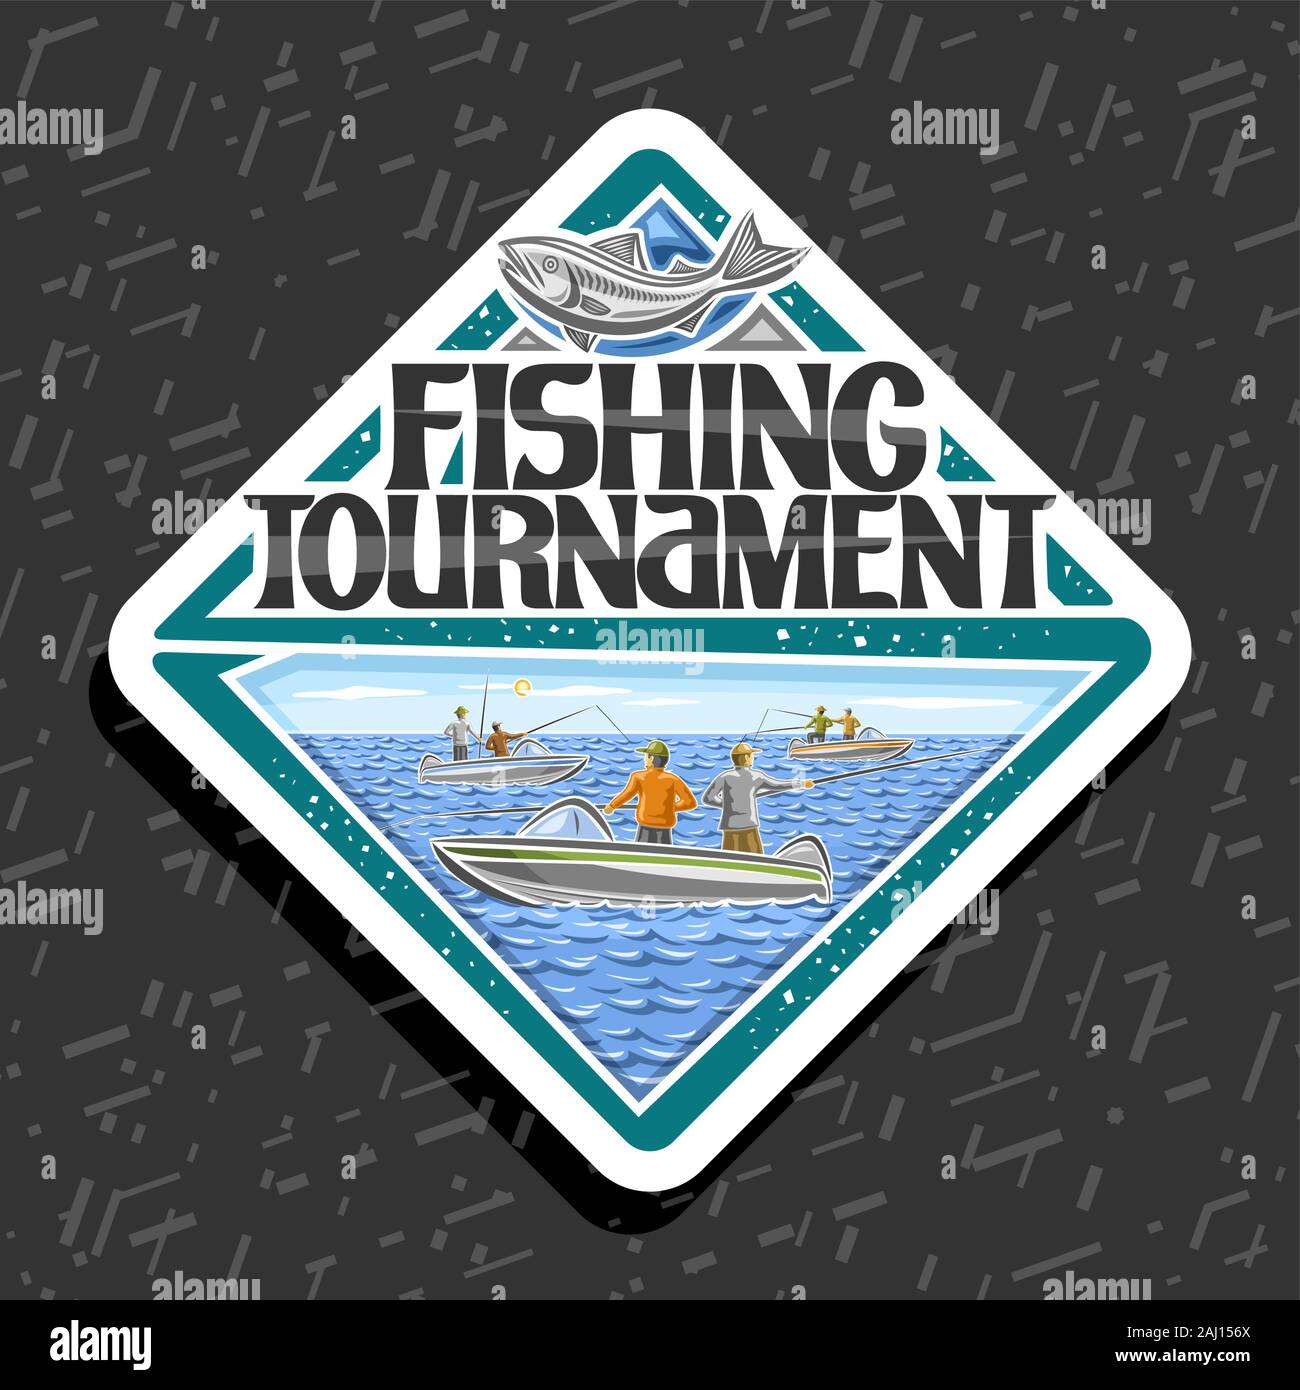 Vektor Logo für die Fischerei Turnier, weiss dekorativer Raute Emblem mit Abbildung der Gruppe stehende Männer in Motorboote, Variable mit ursprünglichen Schrifttyp Stock Vektor